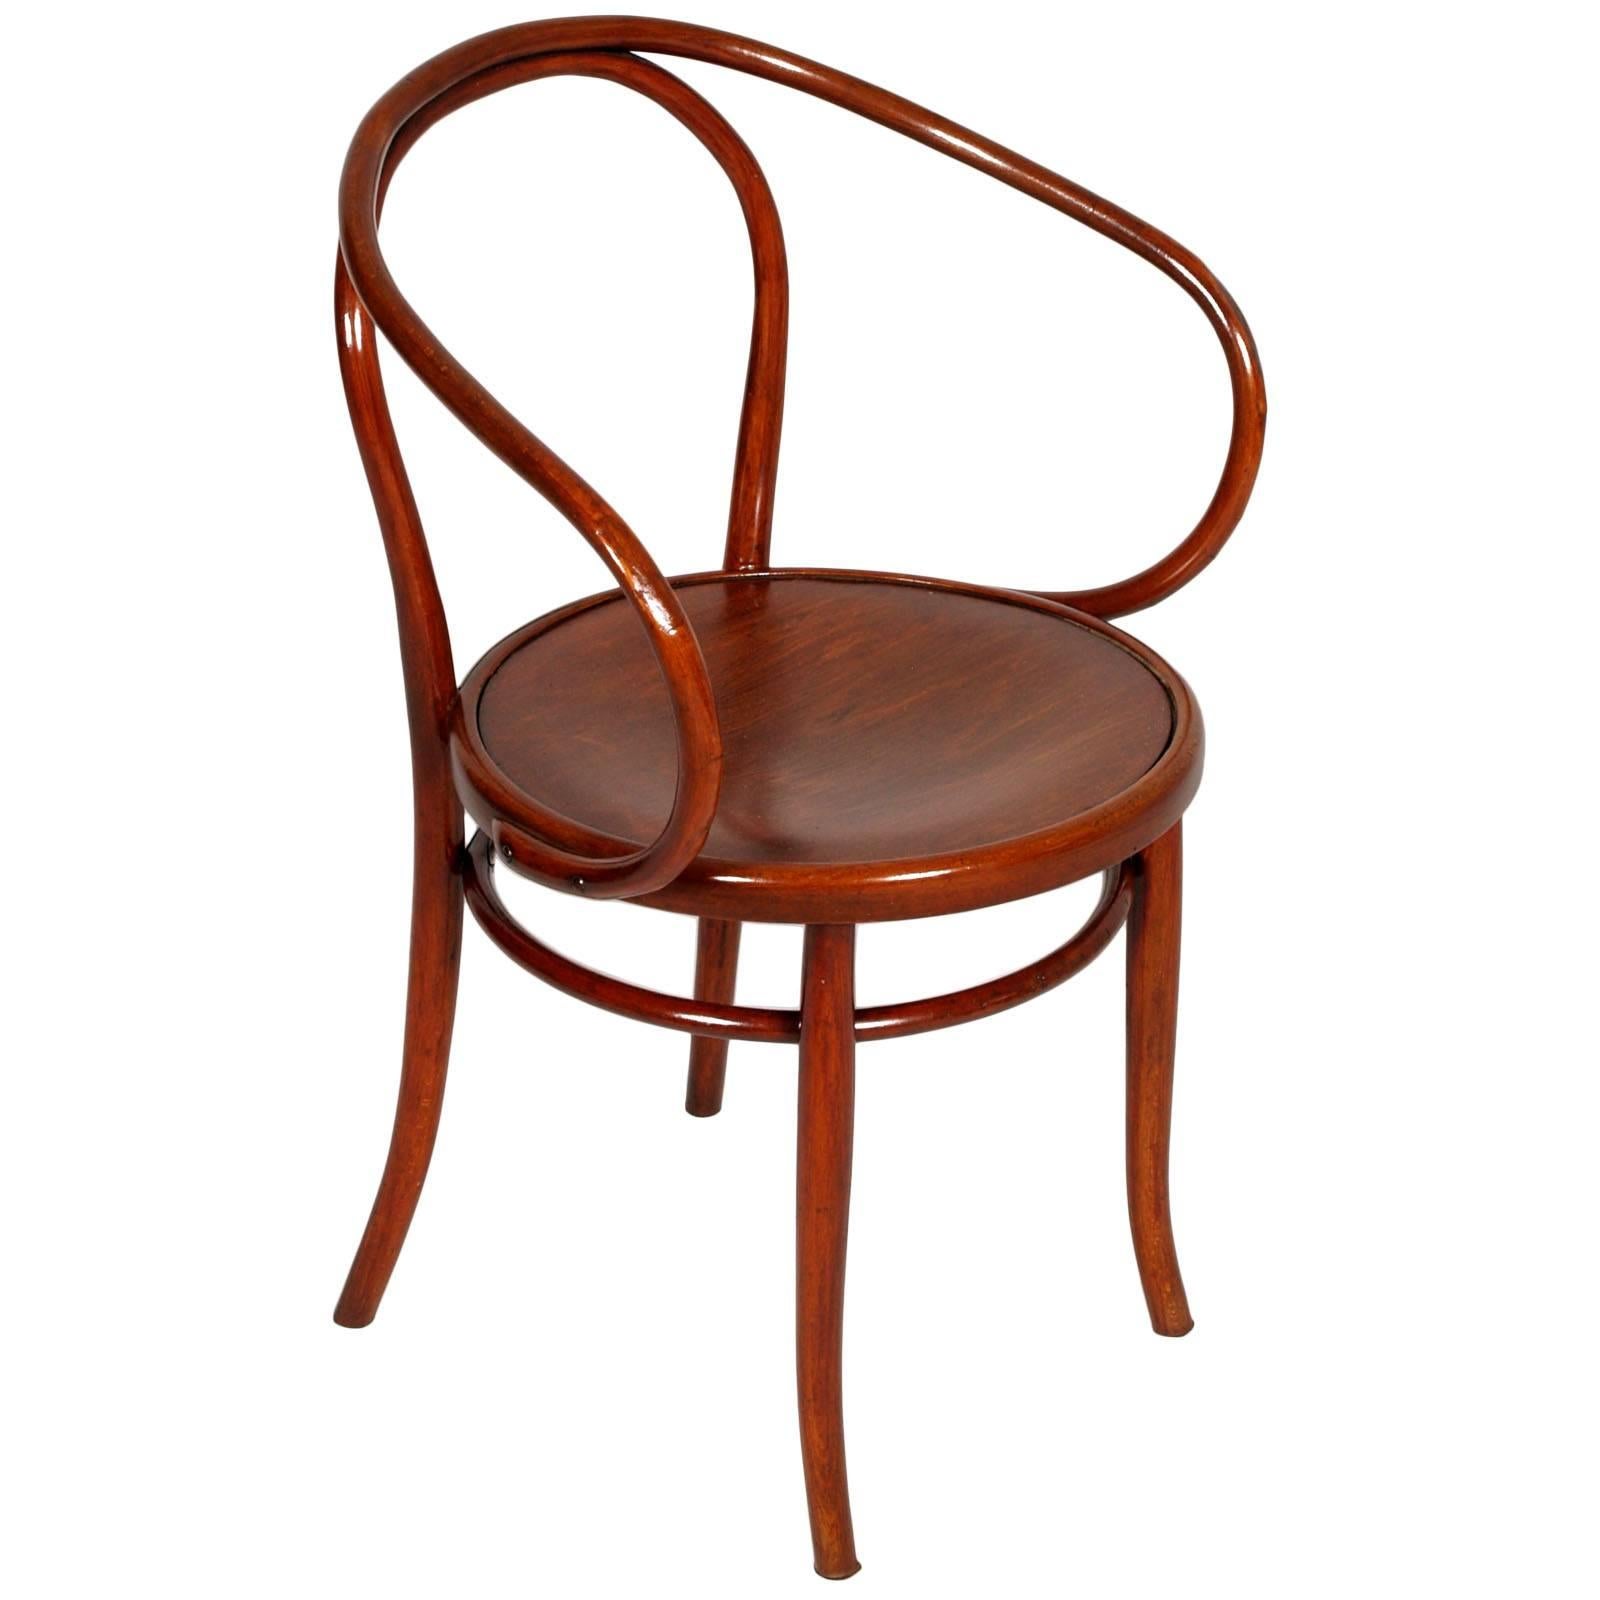 Ein österreichisches (Wien) Paar Bugholz B-9 Sessel von Jacob und Josef Kohn um 1870. Ein origineller, ikonischer Stuhl. Dies ist der Lieblingsstuhl von Architekten, insbesondere von Le Corbusier, der auch genannt wird.
In gutem Originalzustand mit